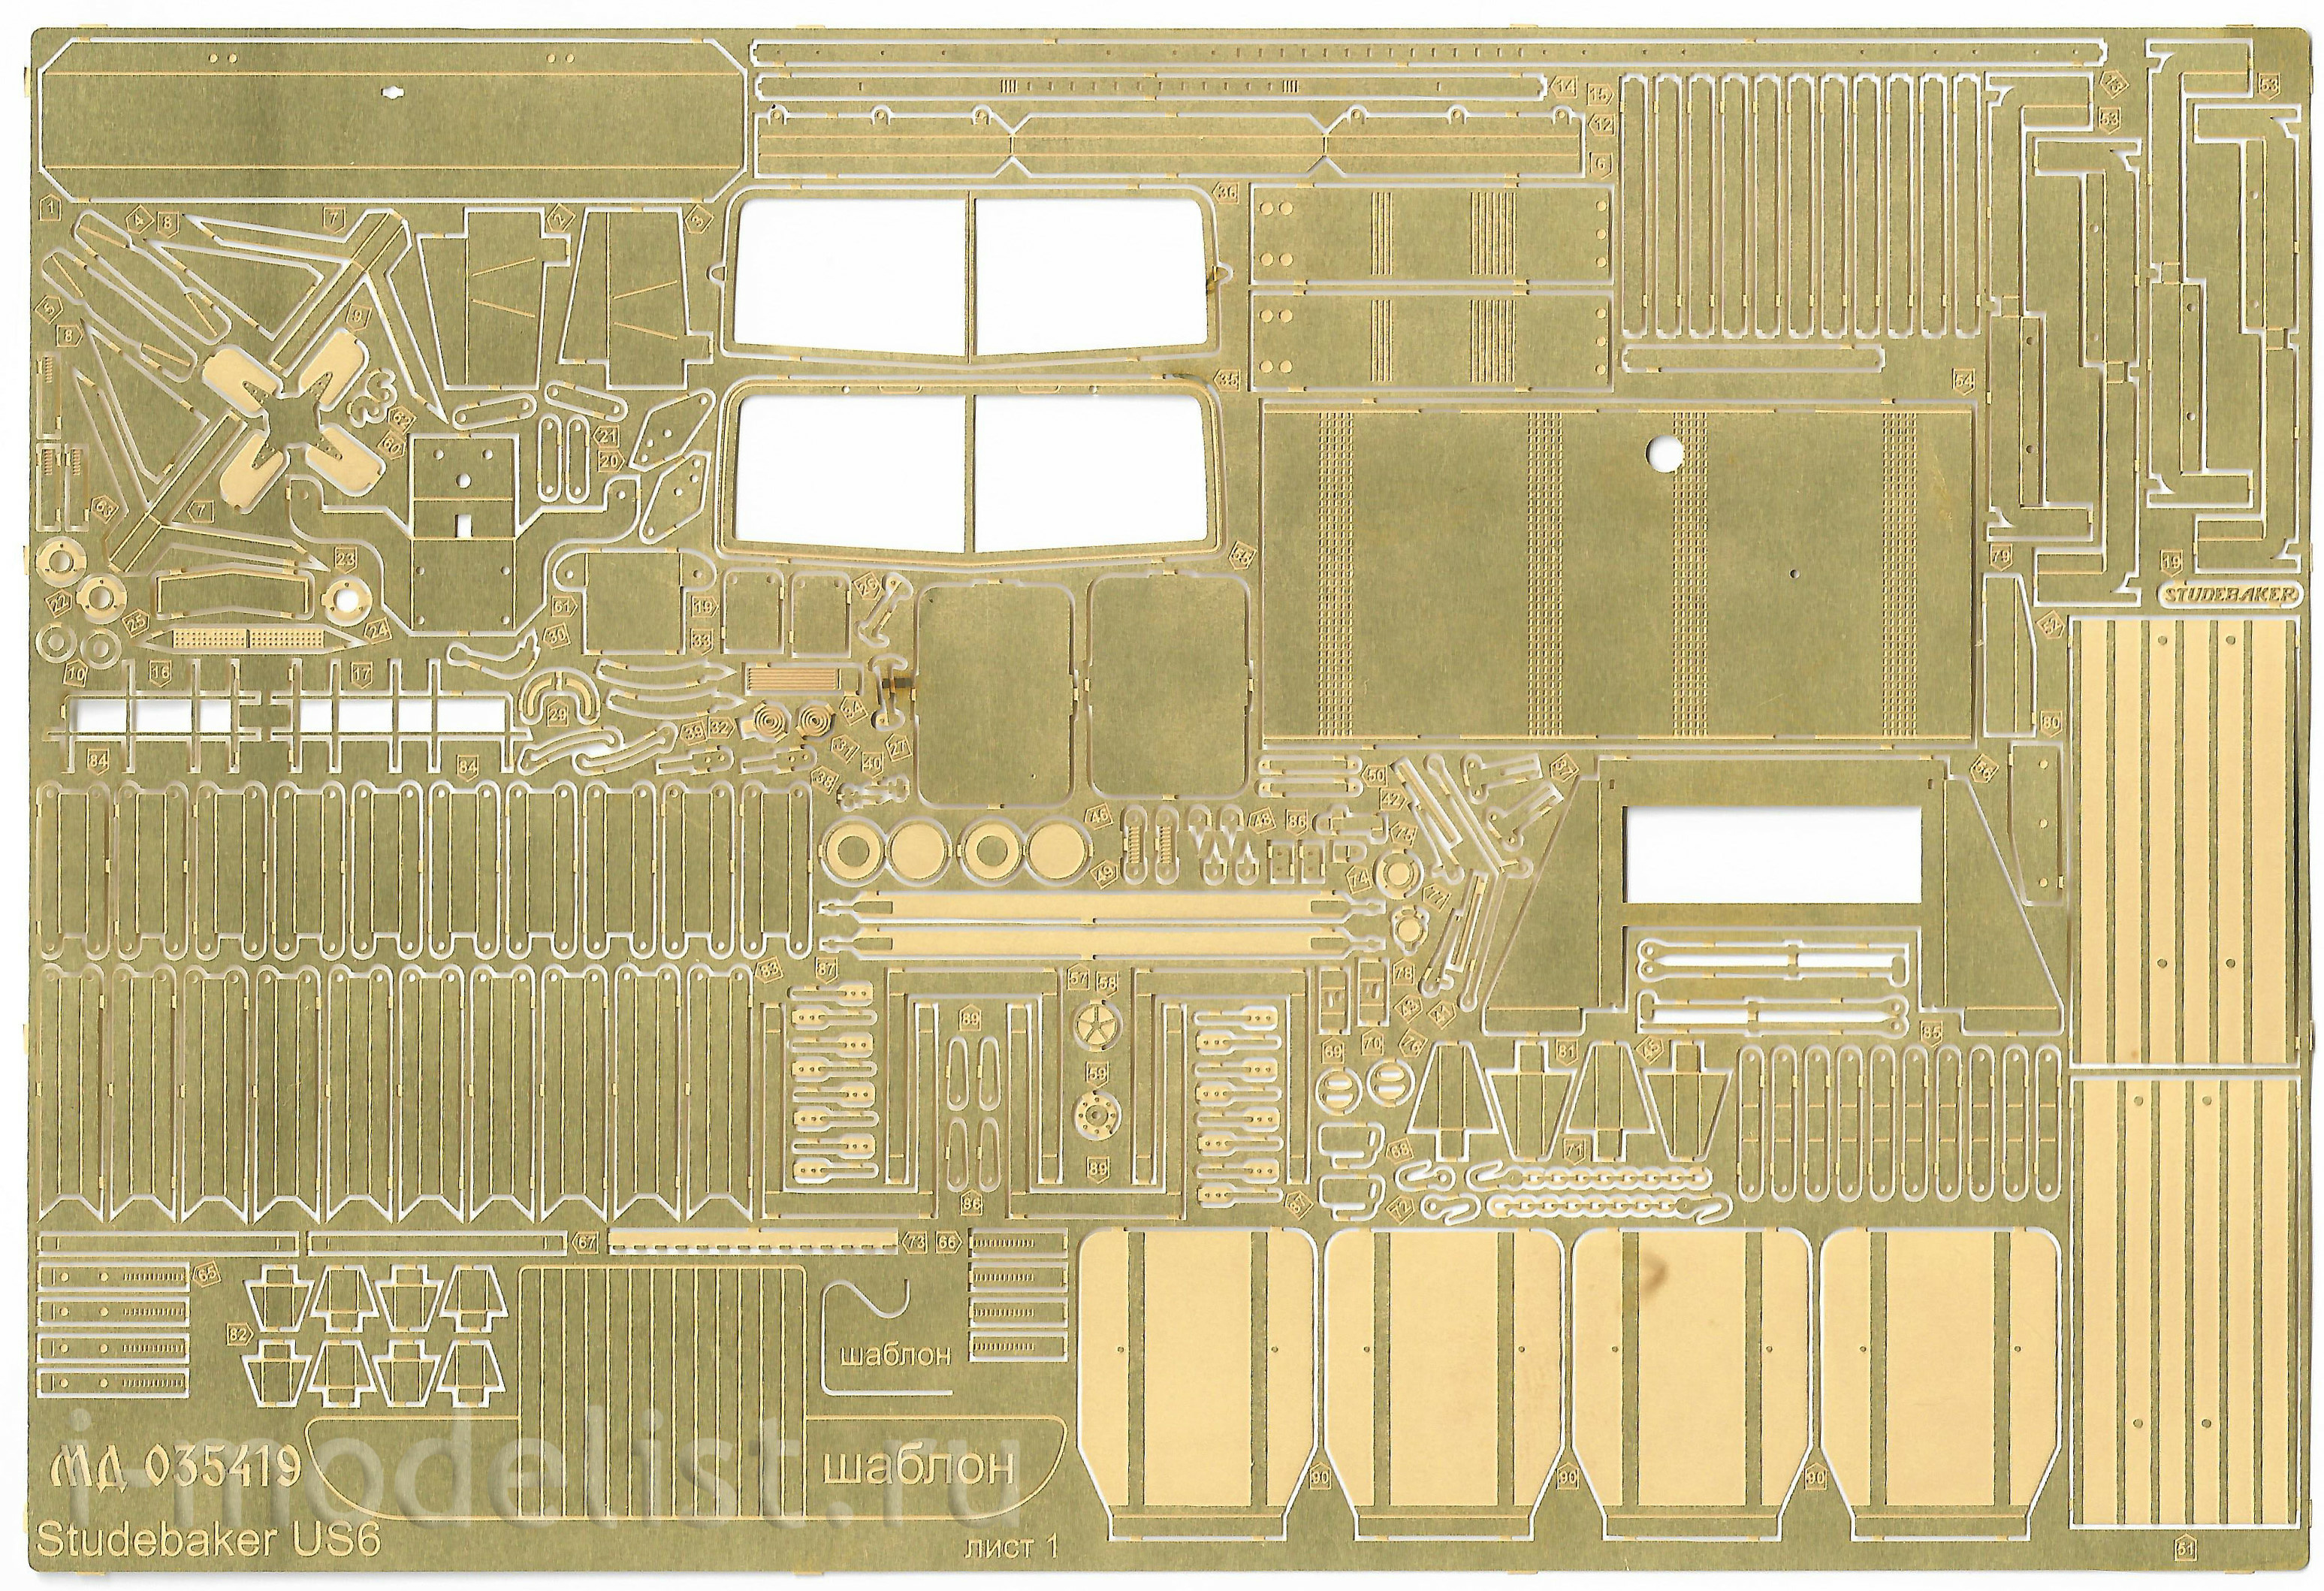 035419 Микродизайн 1/35 Набор фототравления на Studebaker US6 (ICM)